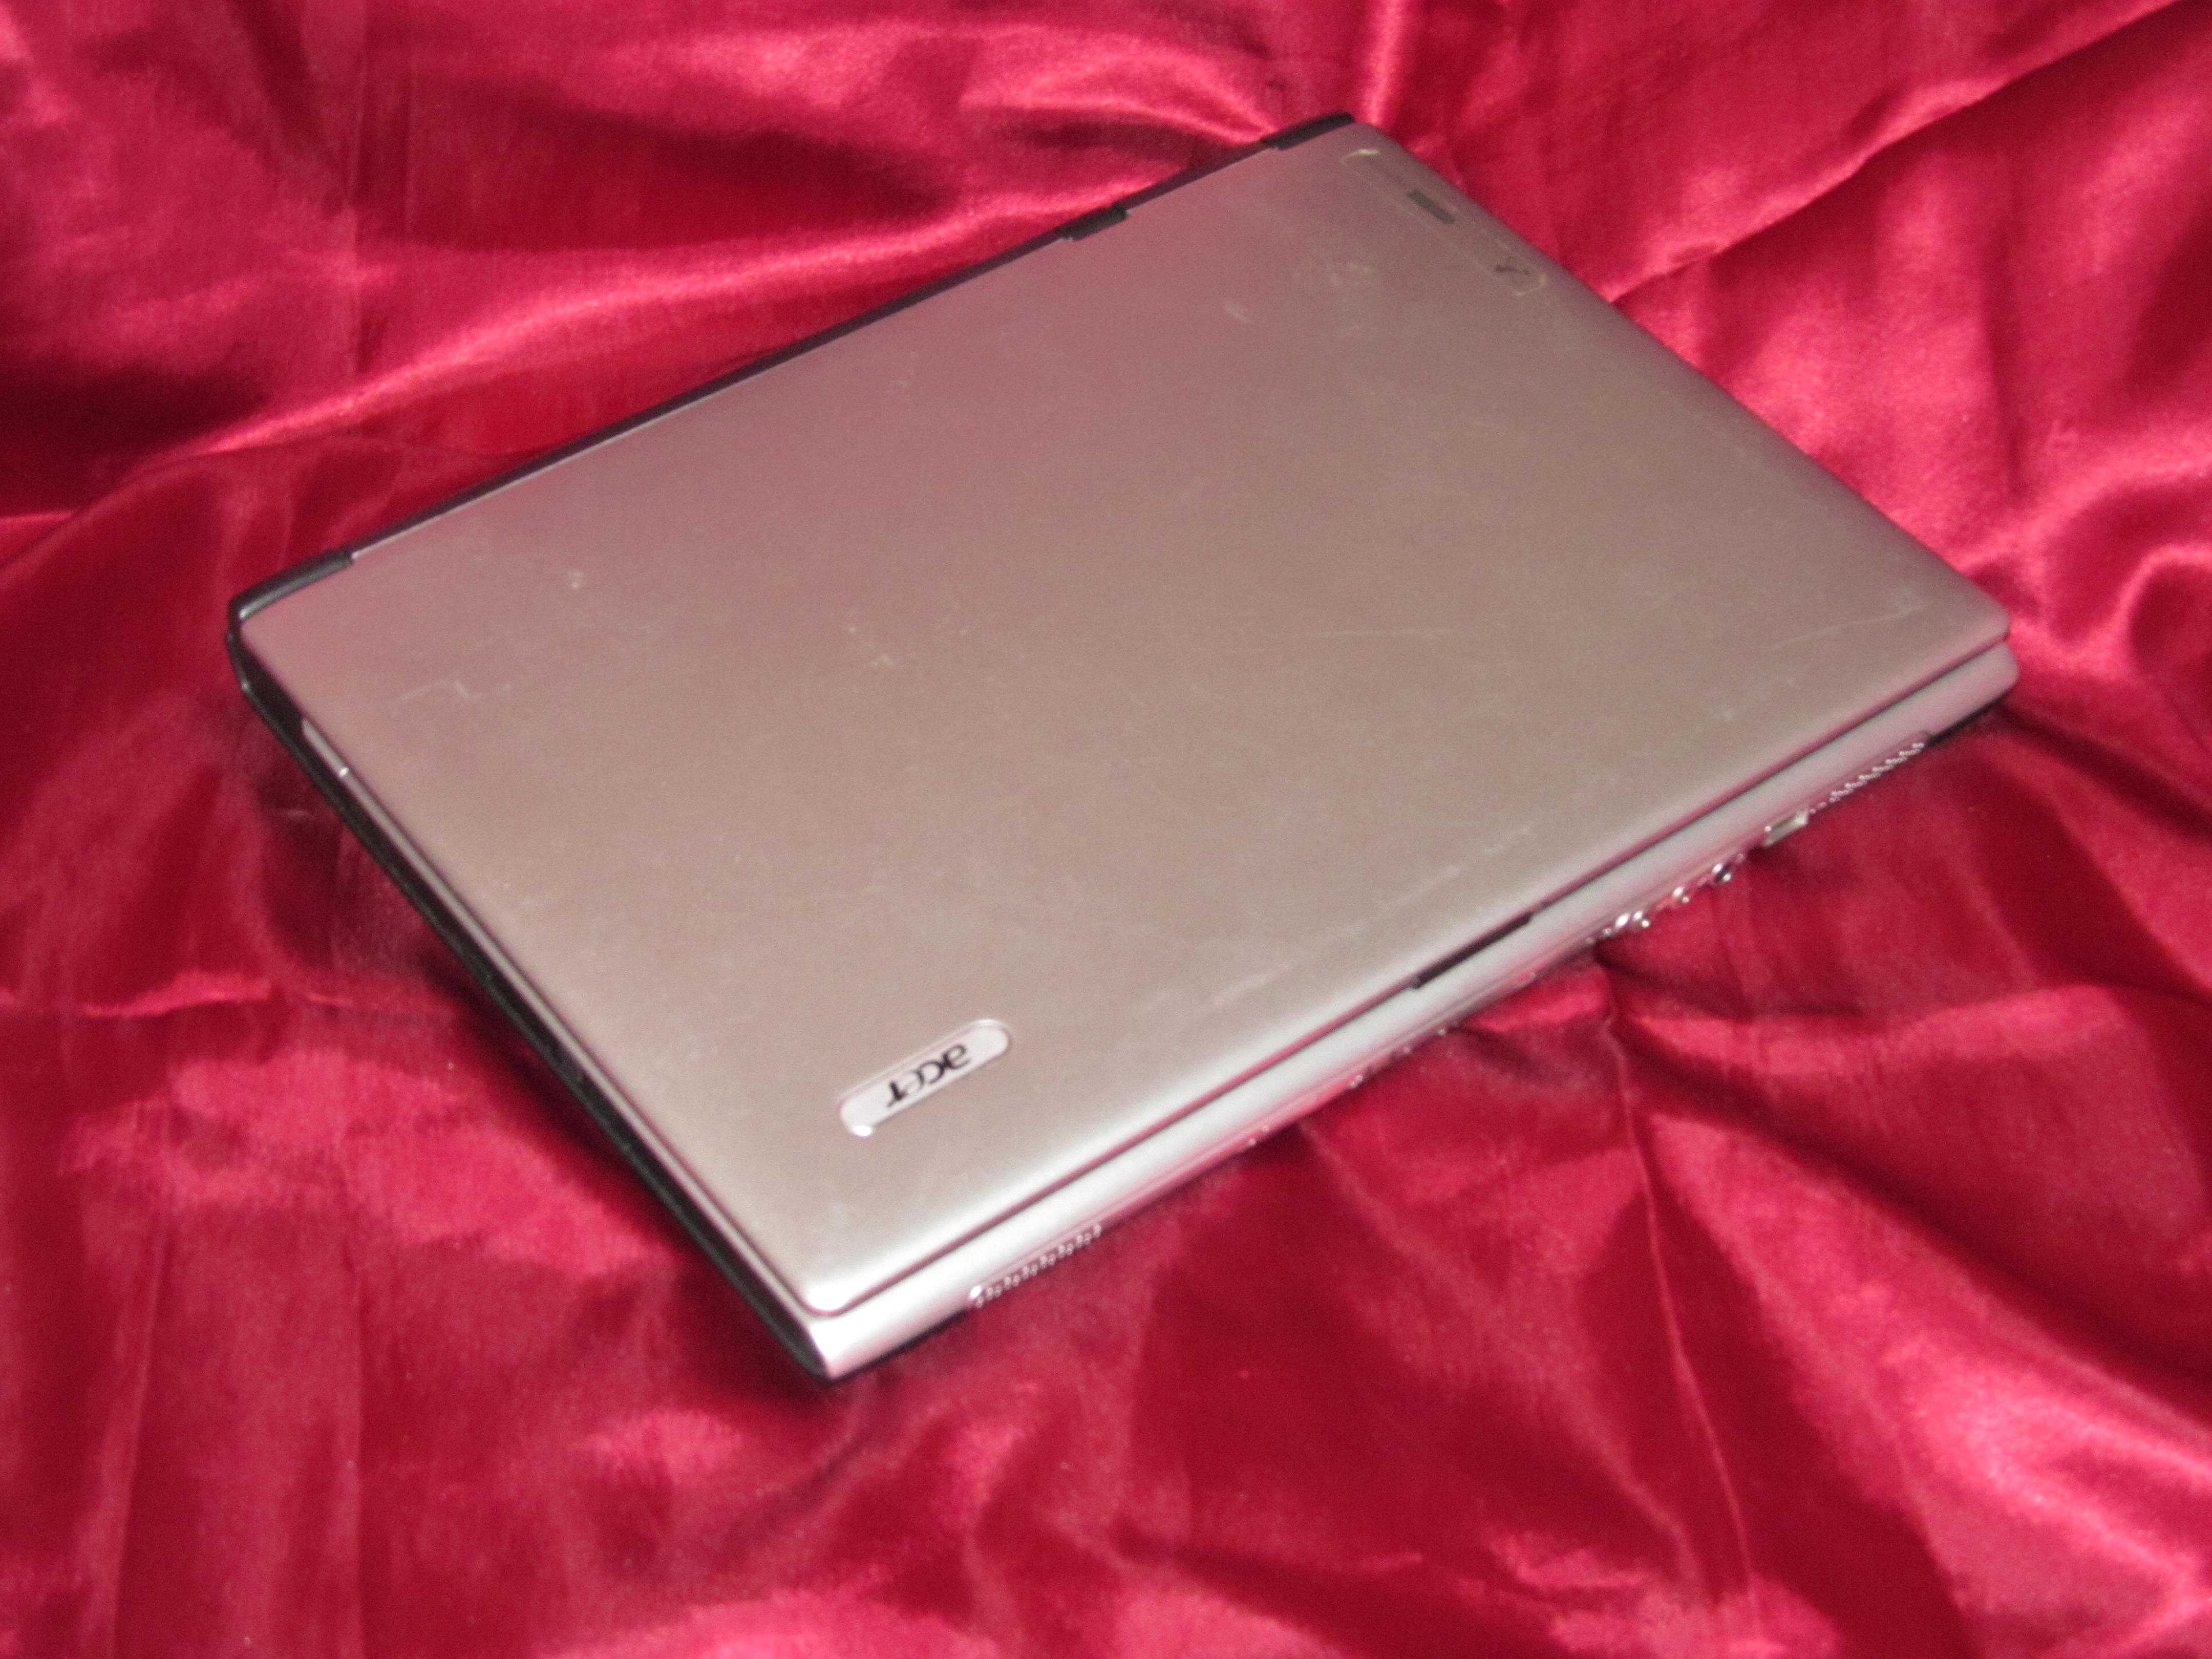 Ноутбук Acer Aspire 1654 WLMi с веб-камерой